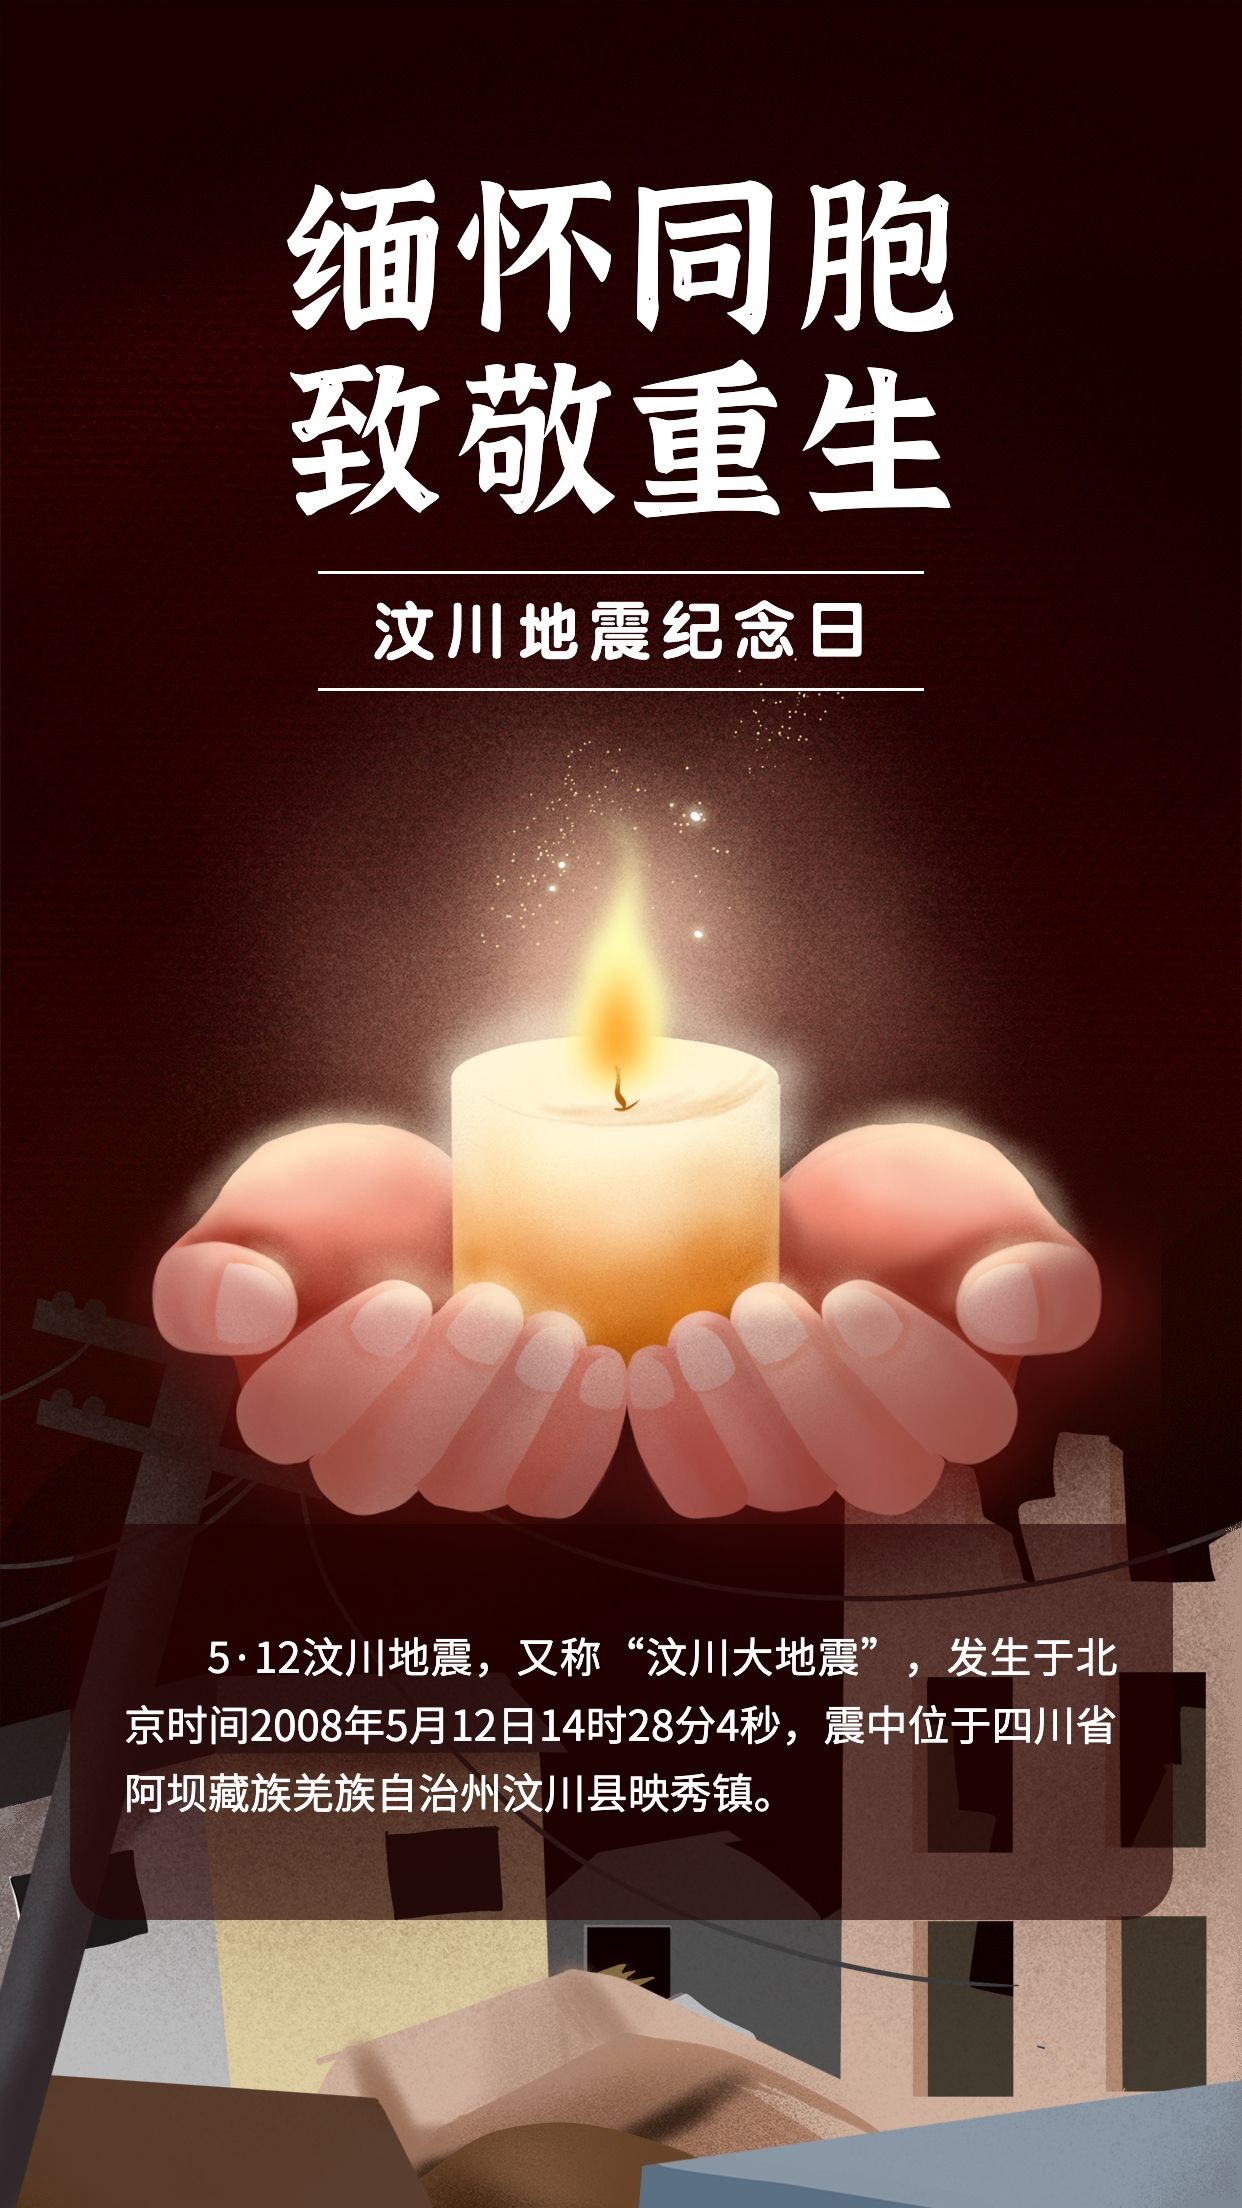 汶川地震纪念日节日宣传手绘插画手机海报预览效果